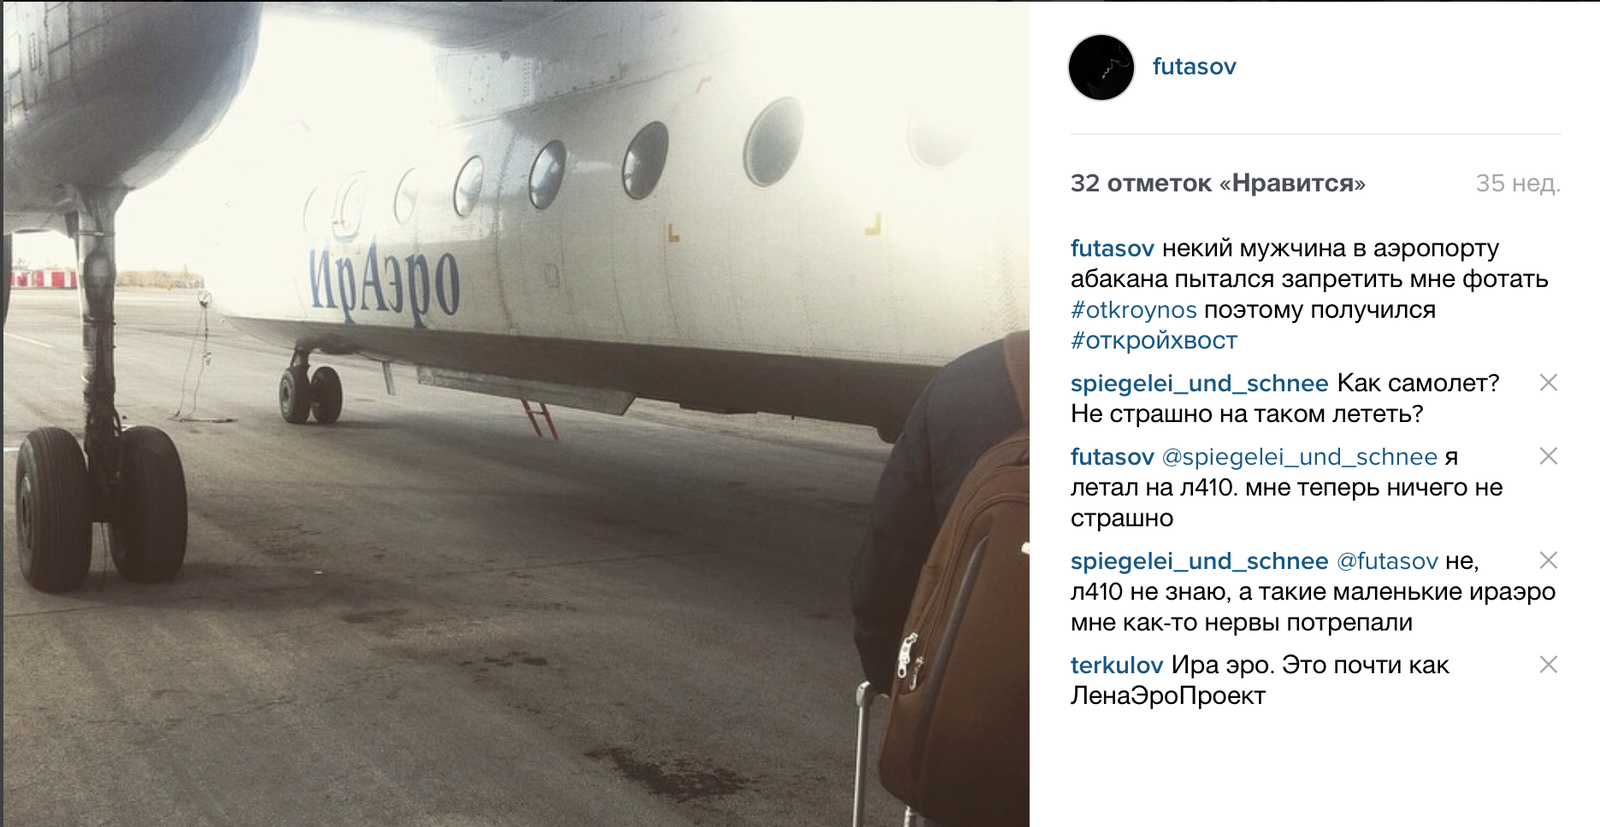 Излечение иркутской аэрофобии в компании артиста Гришковца по пути из Абакана в Иркутск.